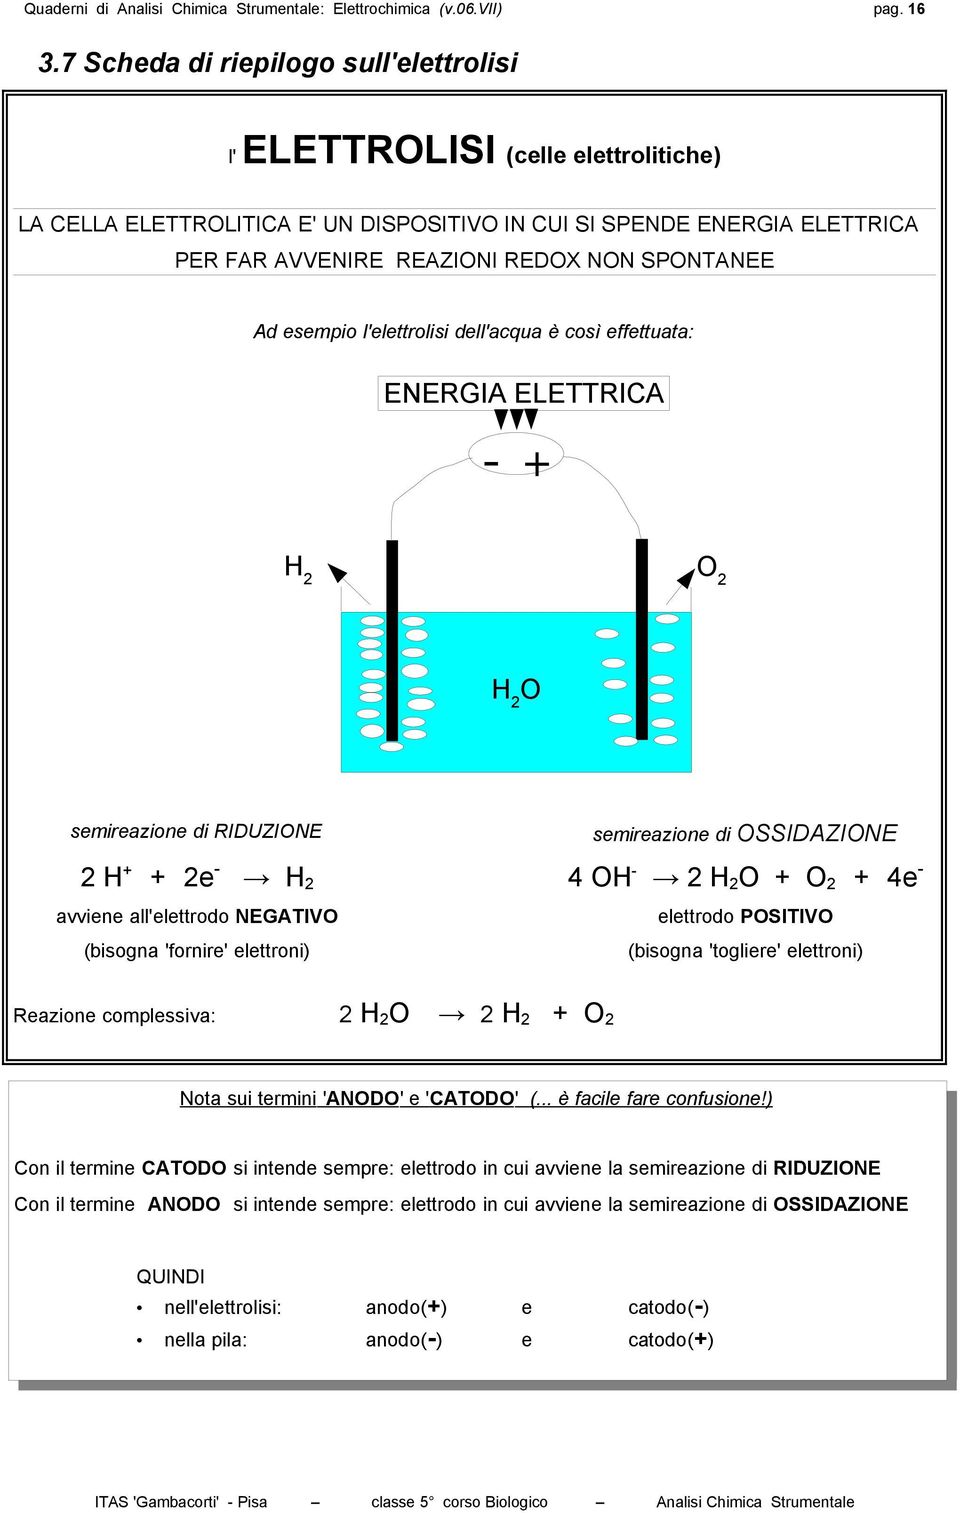 Ad esempio l'elettrolisi dell'acqua è così effettuata: ENERGIA ELETTRICA + H O H O semireazione di RIDUZIONE semireazione di OSSIDAZIONE H + + e H 4 OH H O + O + 4e avviene all'elettrodo NEGATIVO